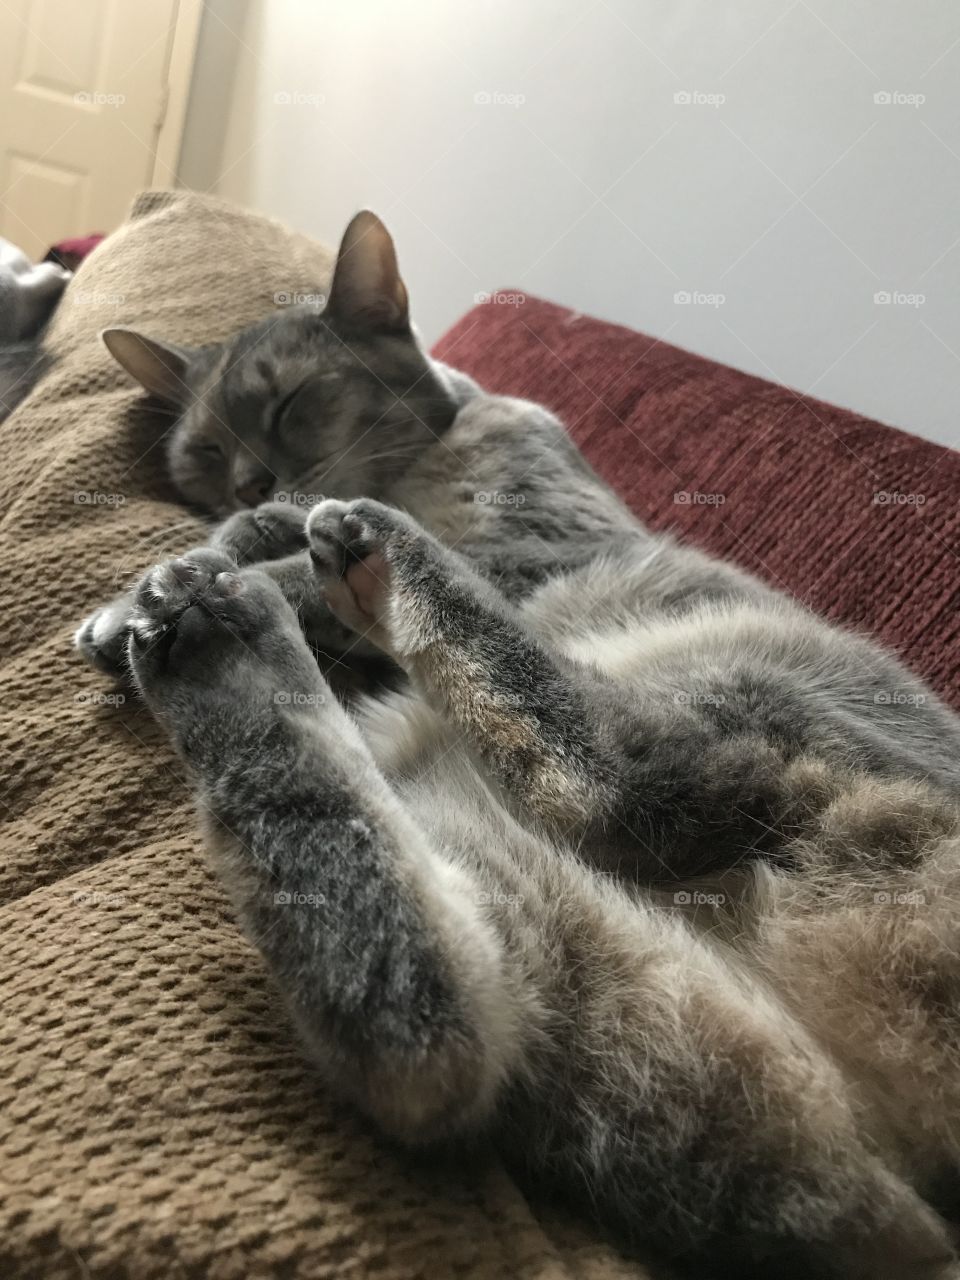 Lazy Kitten